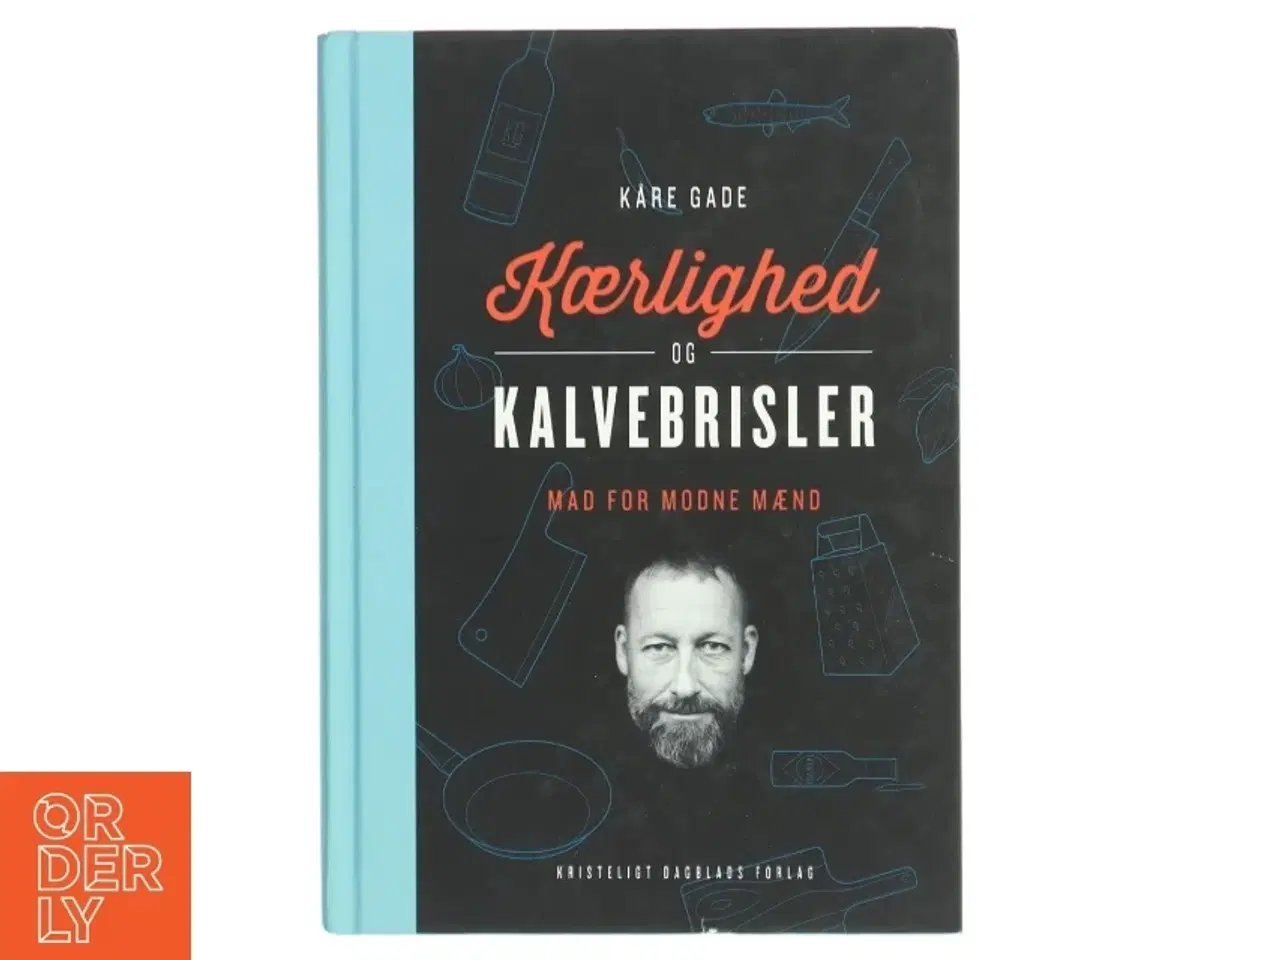 Billede 1 - 'Kærlighed og Kalvebrisler - mad for modne mænd' af Kåre Gade (bog) fra Kristeligt Dagblads Forlag